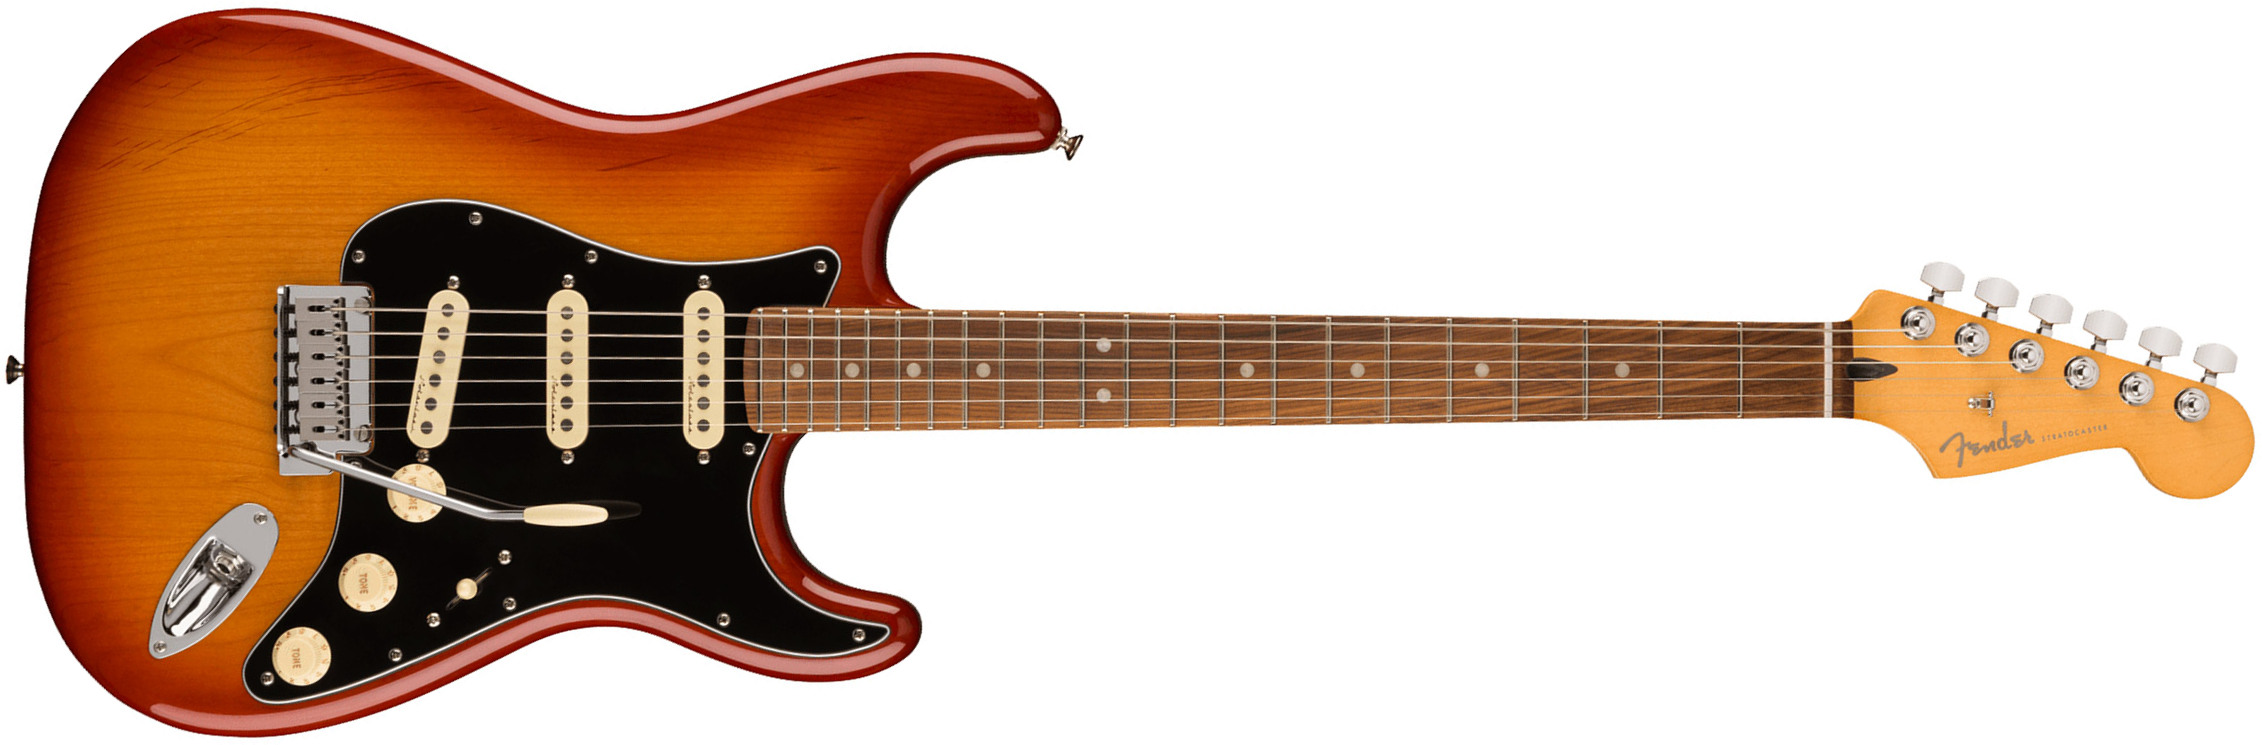 Fender Strat Player Plus Mex 2023 3s Trem Pf - Sienna Sunburst - Guitare Électrique Forme Str - Main picture